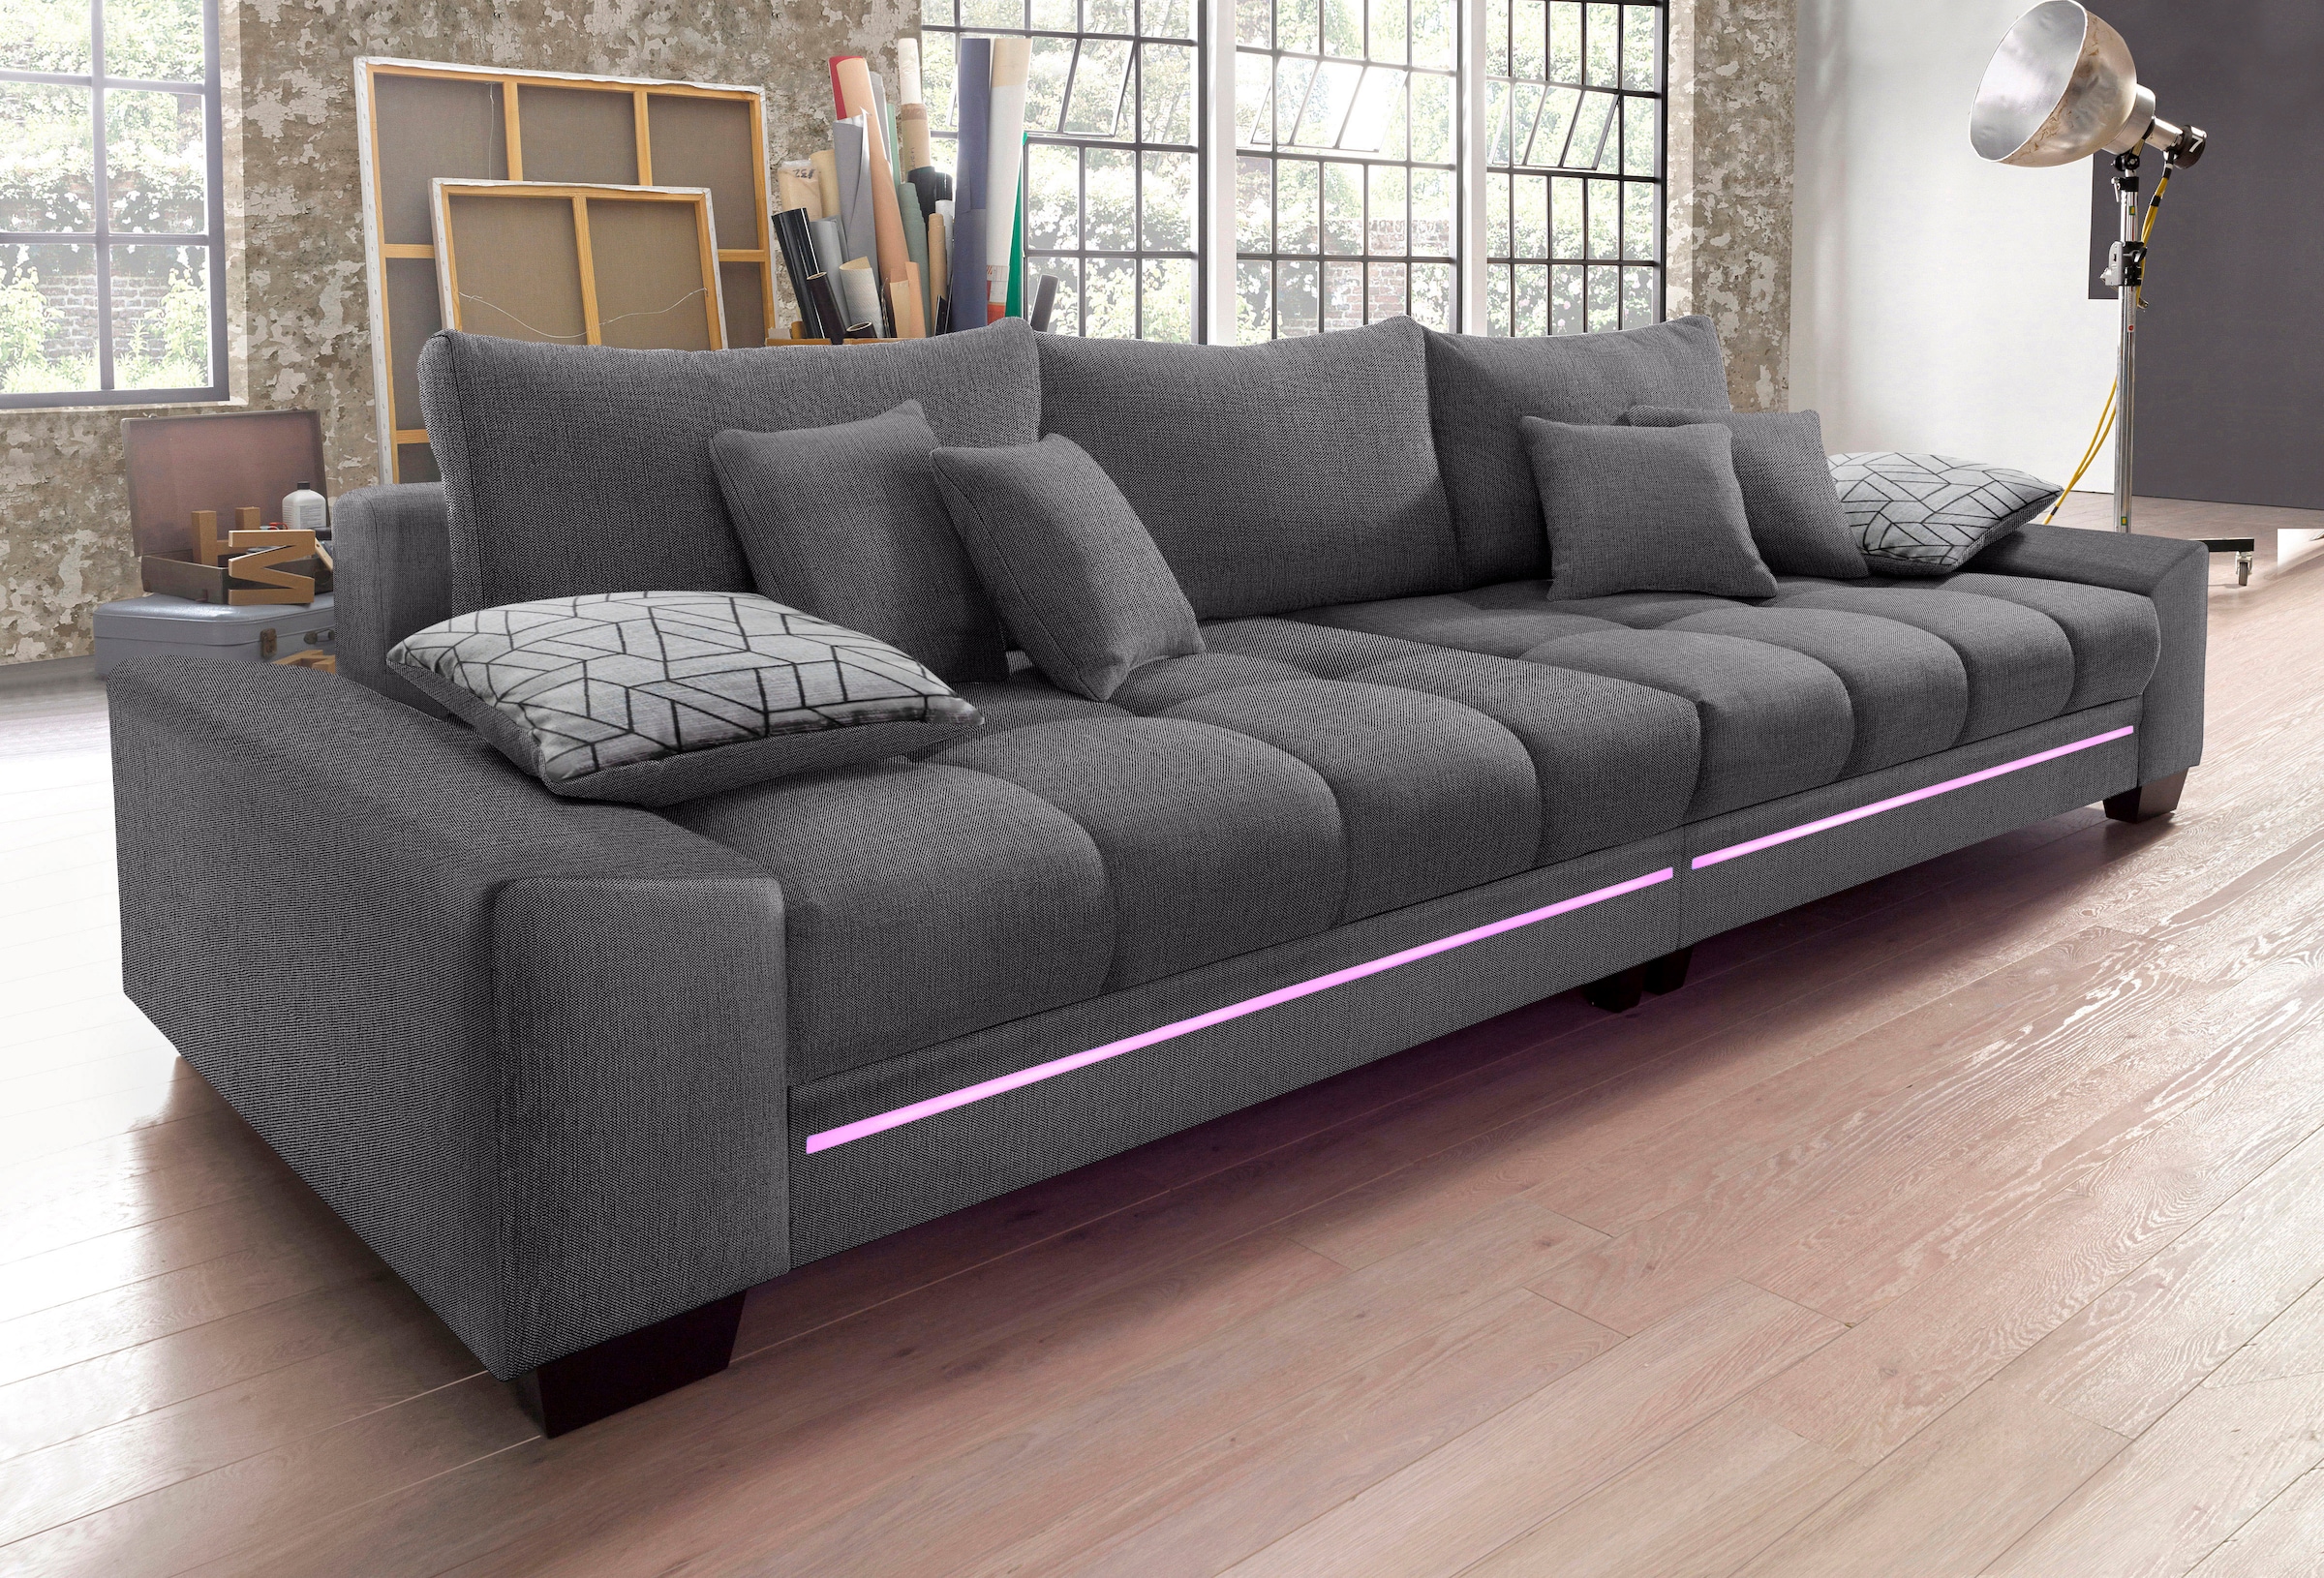 Mr. Couch Big-Sofa »Nikita«, wahlweise mit Kaltschaum (140kg  Belastung/Sitz), mit RGB-Beleuchtung kaufen bei OTTO